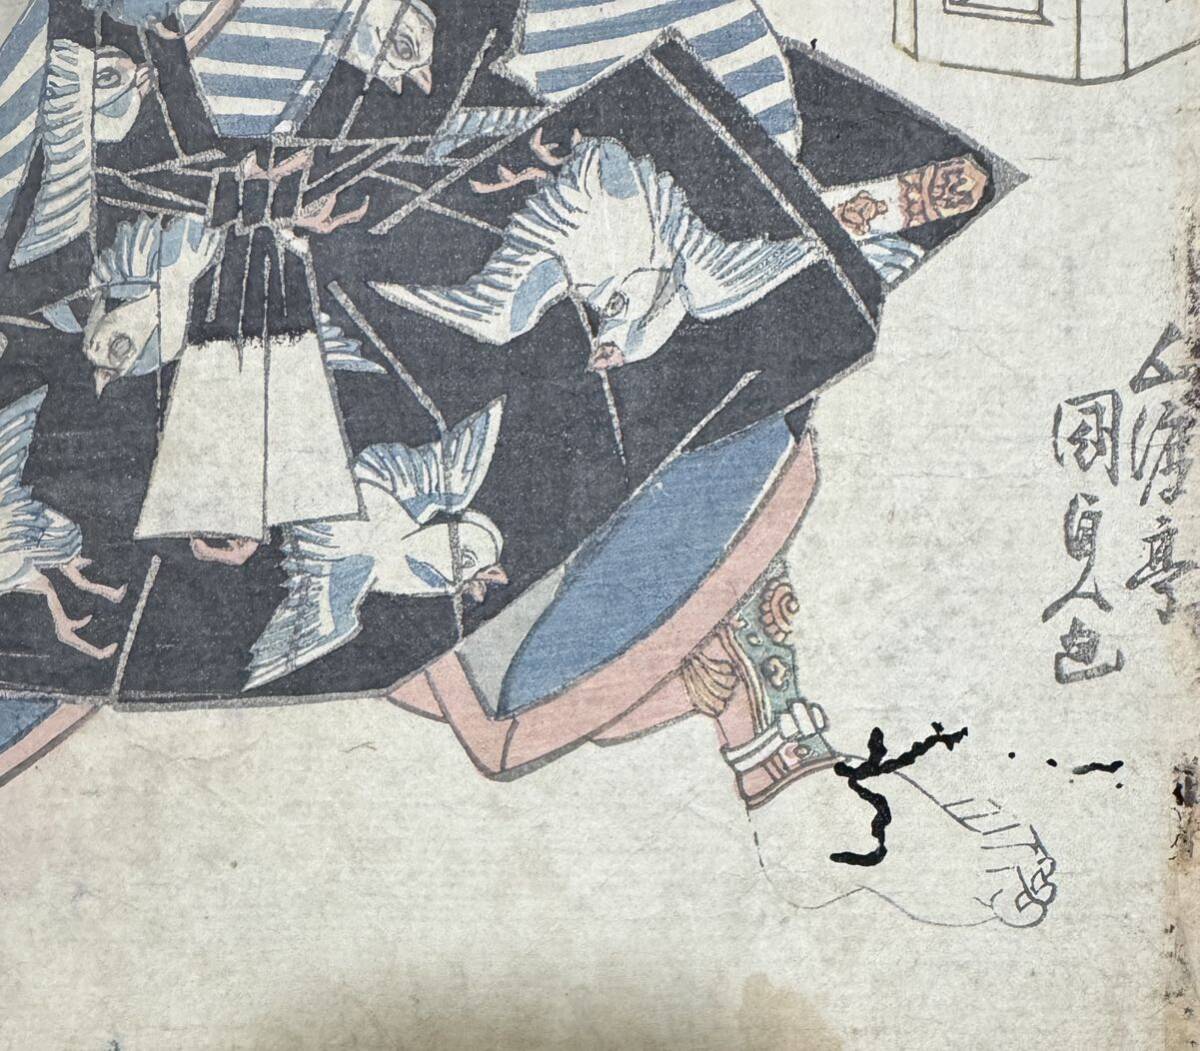  Edo период / подлинный произведение . река страна . подлинный товар картина в жанре укиё гравюра на дереве сцена из кабуки изображение актеров газонная трава .... большой размер 